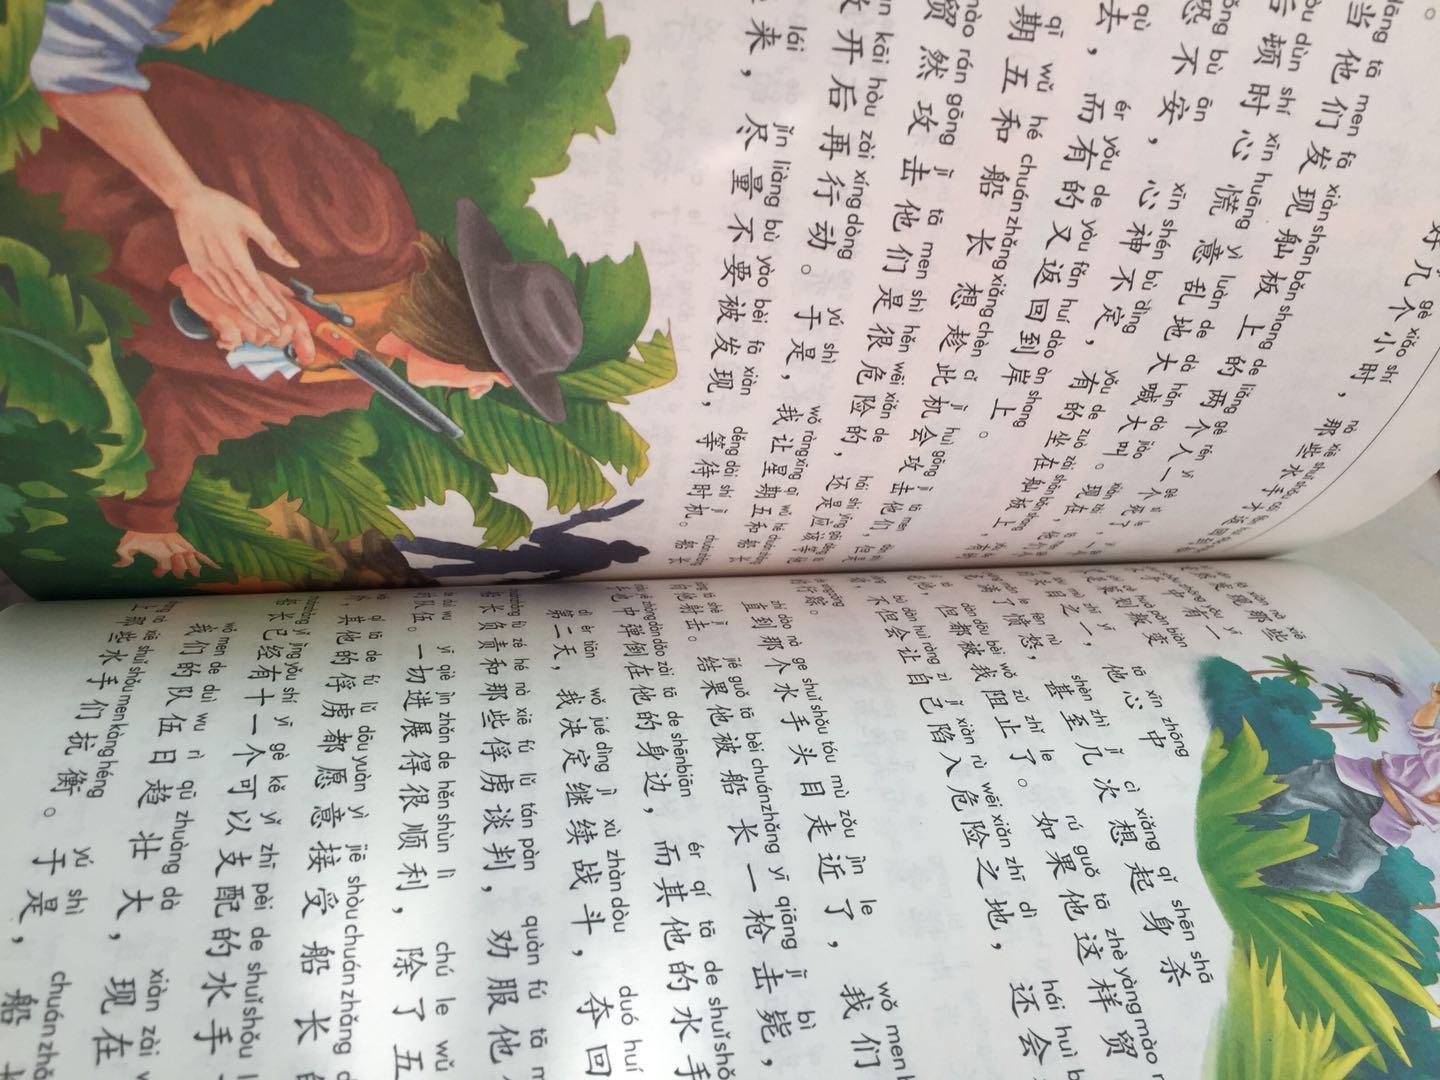 看到封面就忍不住给孩子买了这套名著。这本《尼尔斯骑鹅旅行记》是我小时候最喜欢的一本故事书，里面充满了教育意味，现在给自己家的孩子来看，真的是很有意义呢。从这本书里，可以看到大量有趣可爱的插图，非常适合原有故事里的情节，孩子也非常喜欢读，另外，书里还贴心地配有拼音，有时候我不在家时，孩子都可以自己独立阅读，孩子能养成这种好习惯，多亏了这套书，真心推荐！